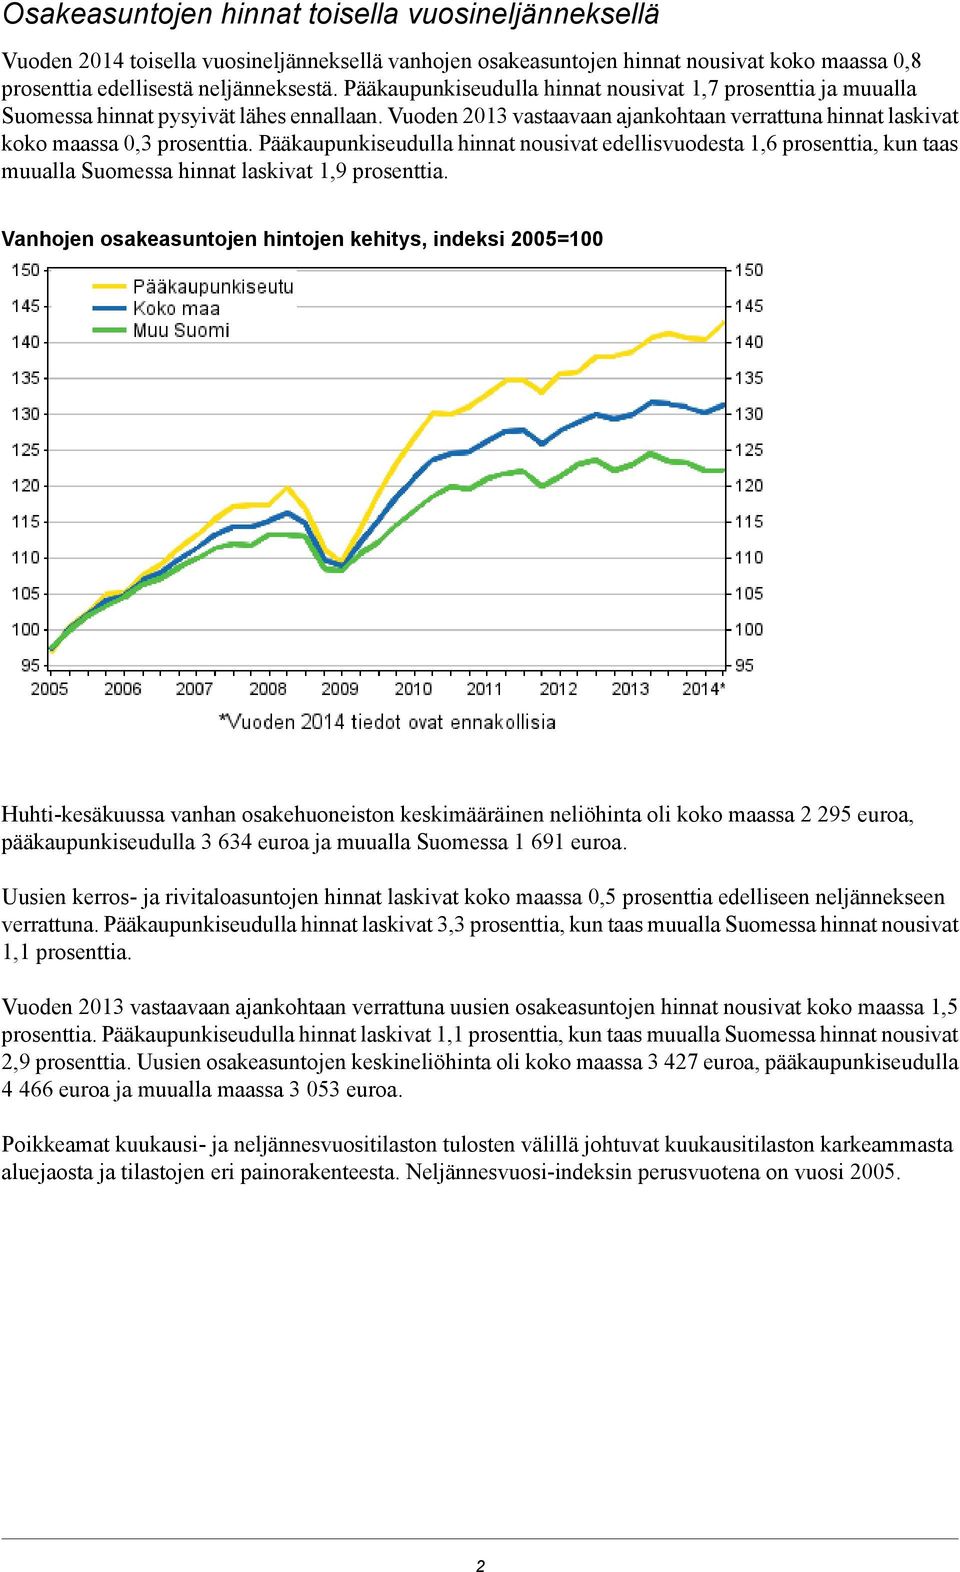 Pääkaupunkiseudulla hinnat nousivat edellisvuodesta 1,6 prosenttia, kun taas muualla Suomessa hinnat laskivat 1,9 prosenttia Vanhojen osakeasuntojen hintojen kehitys, indeksi 2005=100